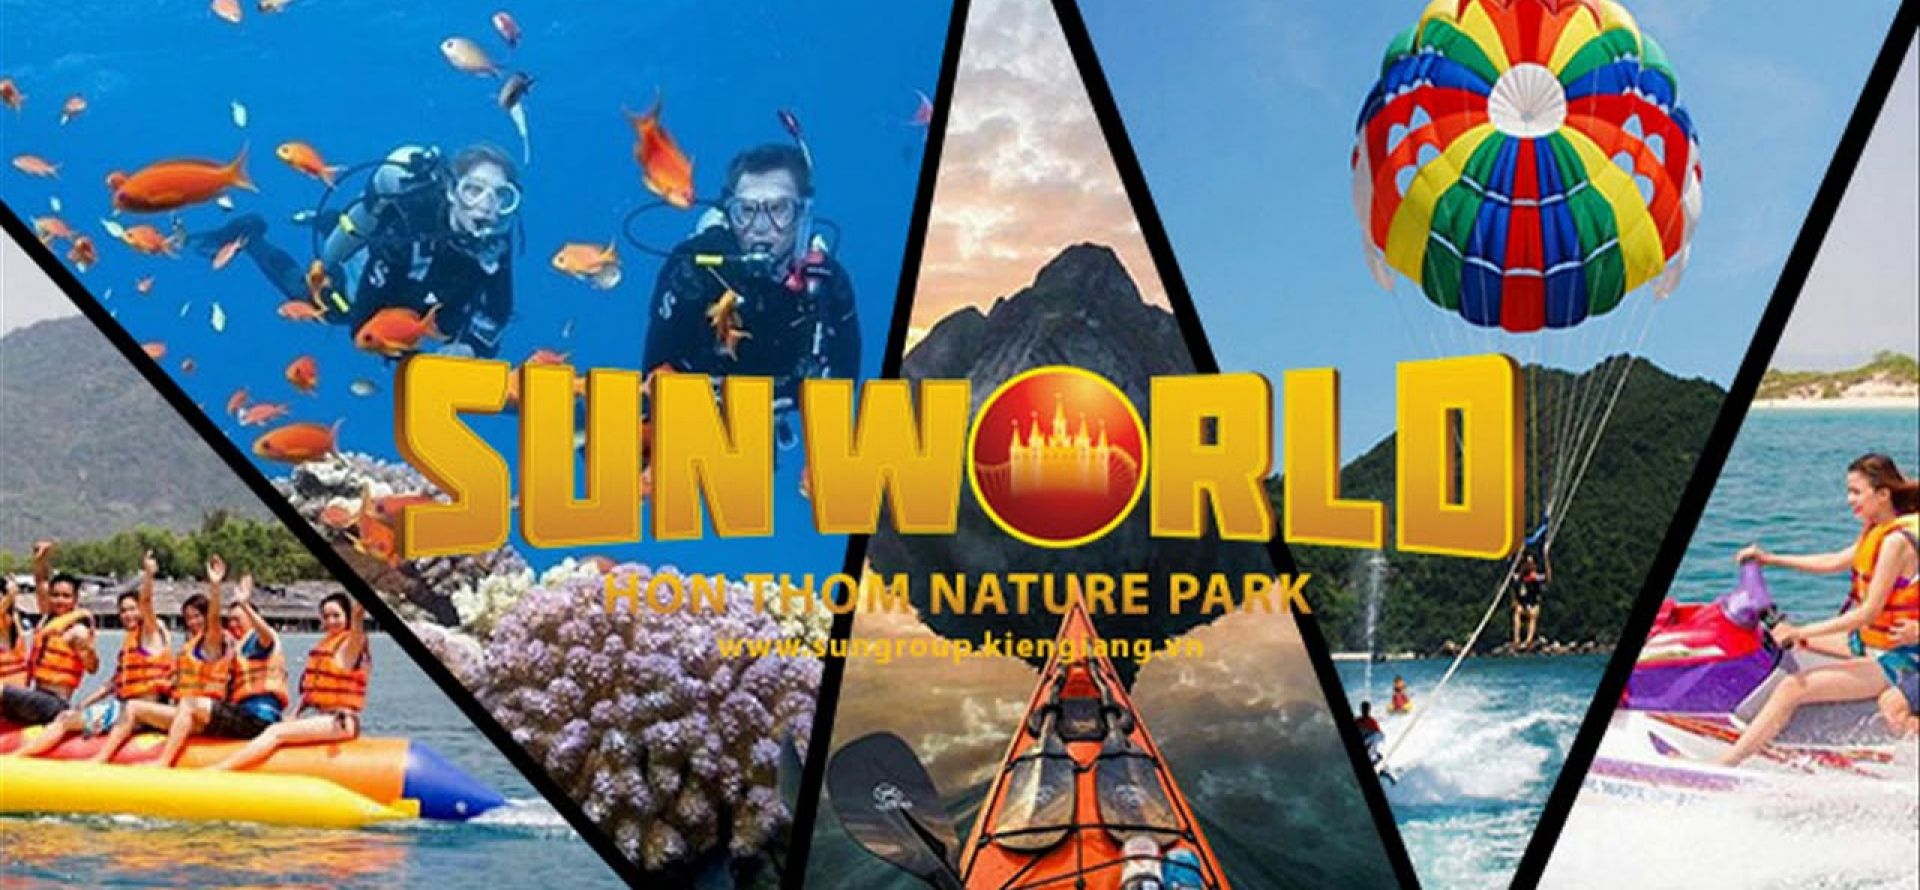 Khu phức hợp vui chơi giải trí Sun World Hon Thom Nature Park đảo Hòn Thơm là điểm phải đến của du khách khi đến Phú Quốc